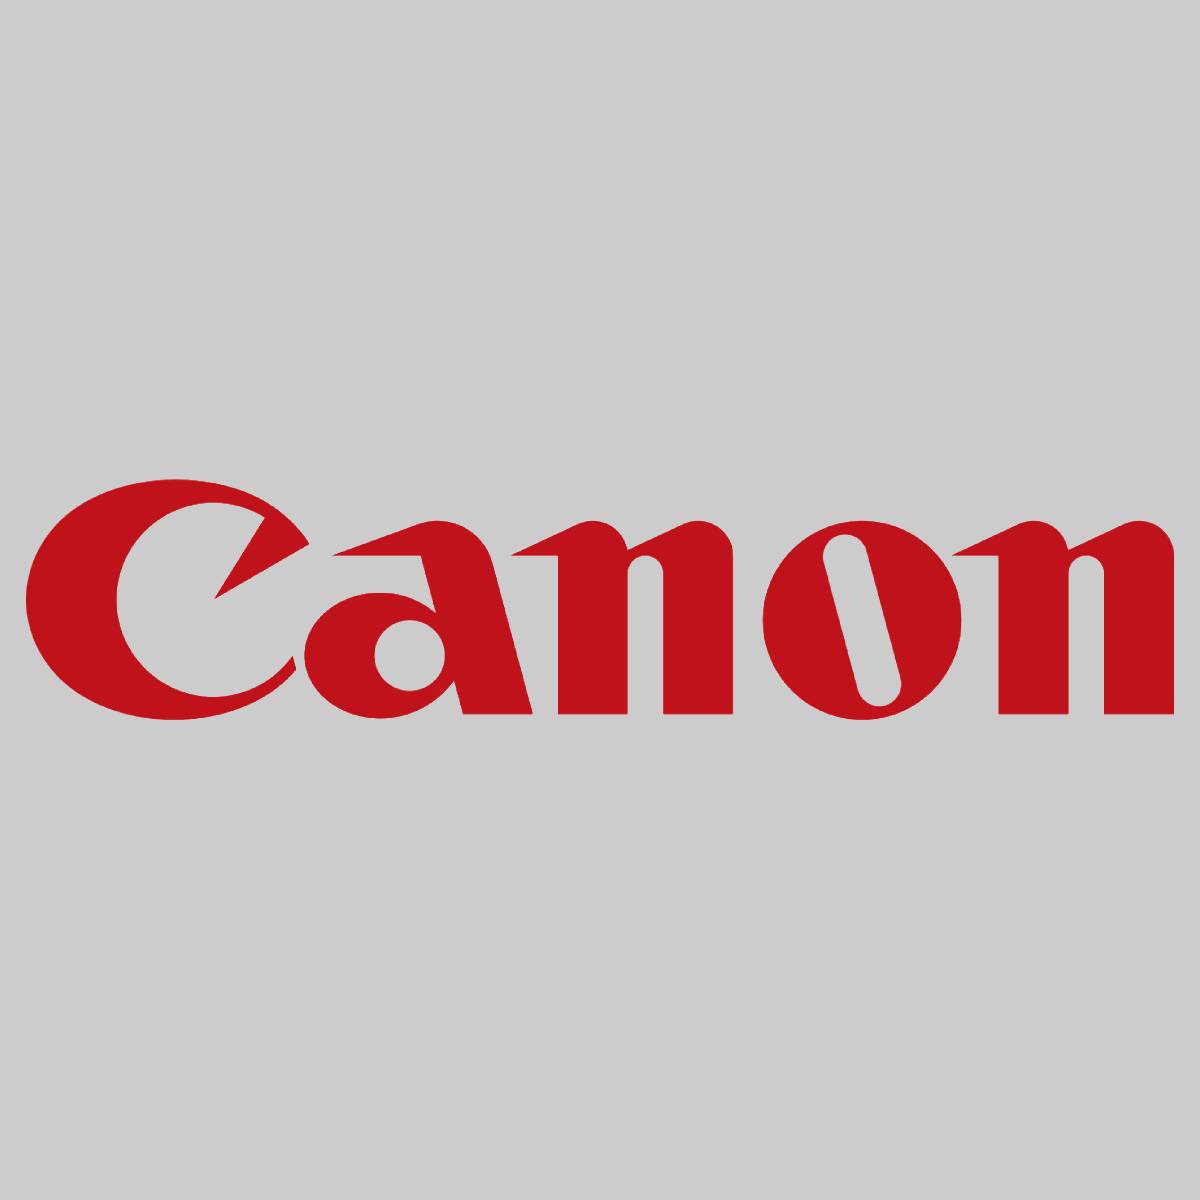 "Original Canon C-EXV47 Drum Unit Yellow 8523B003 imageRunner-C 250 i 250 iF 350